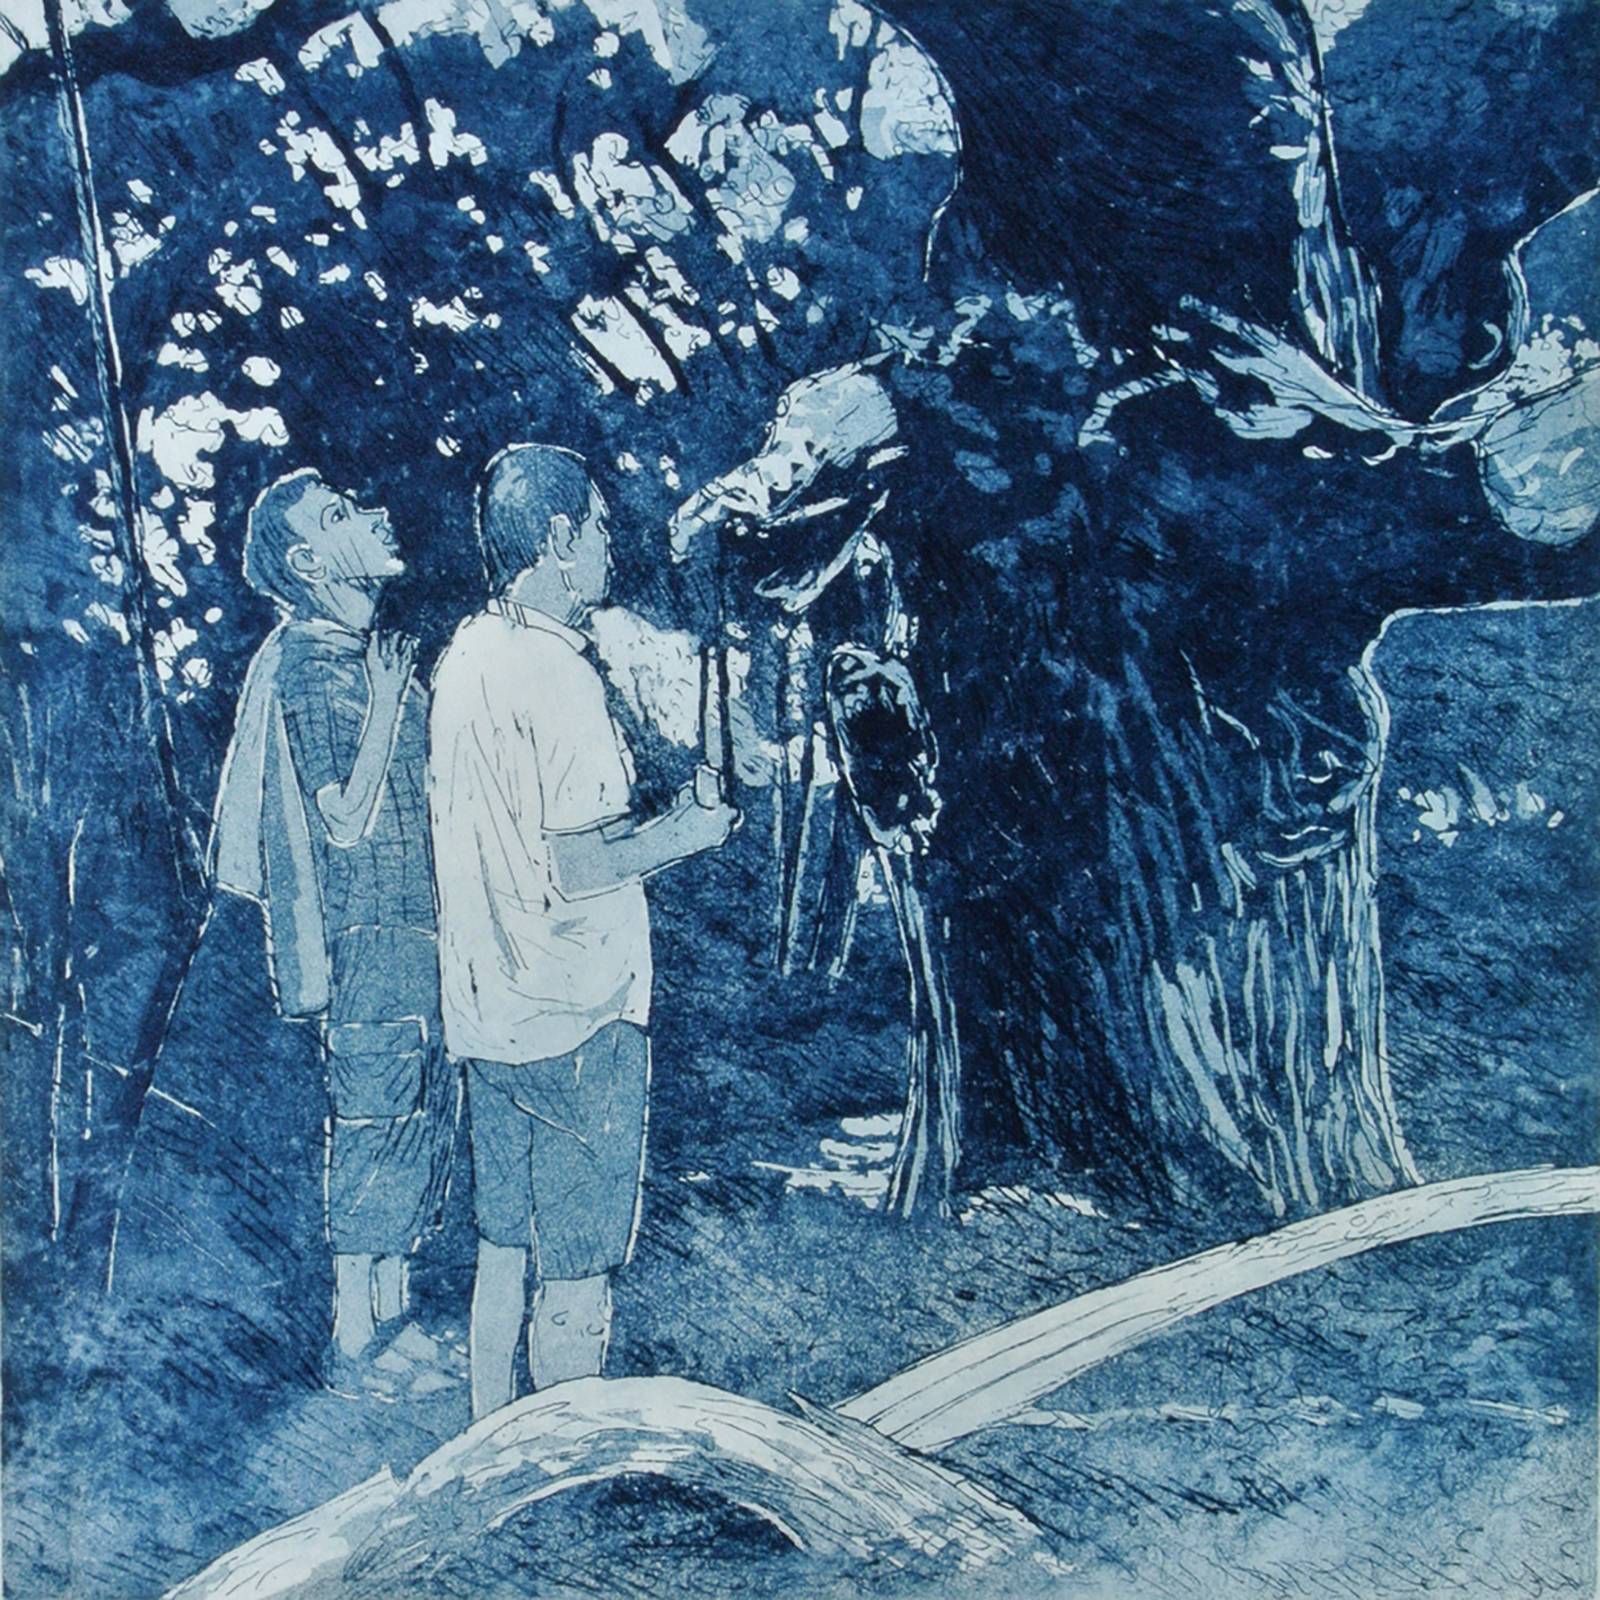 Aquatinta-Radierung, 50 x 35 cm, Personen und ein Baum